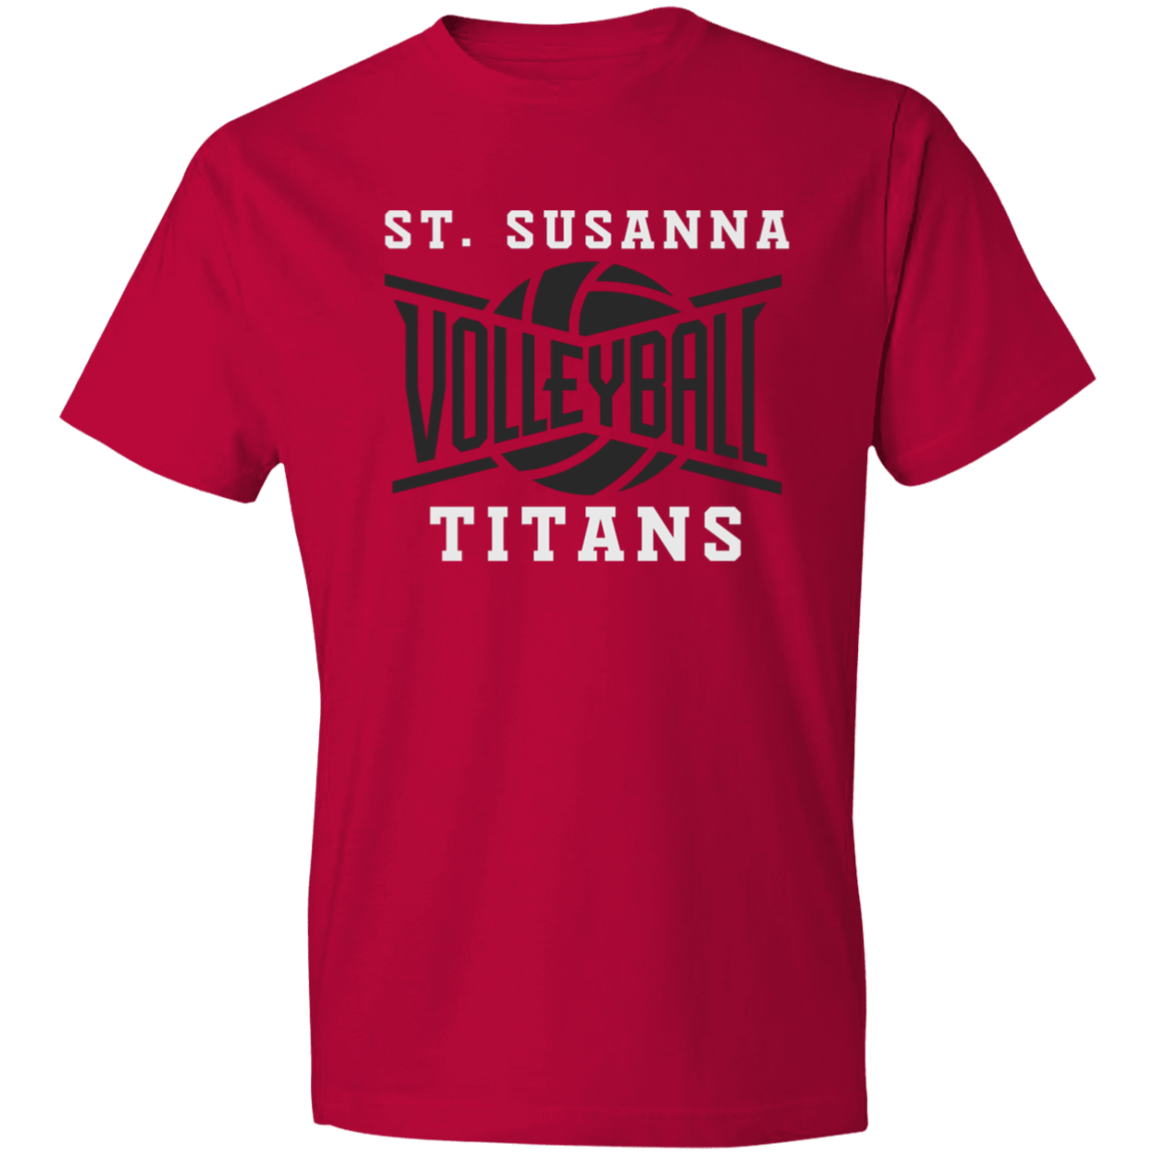 St. Susanna Titans Volleyball (Red) Lightweight T-Shirt 4.5 oz